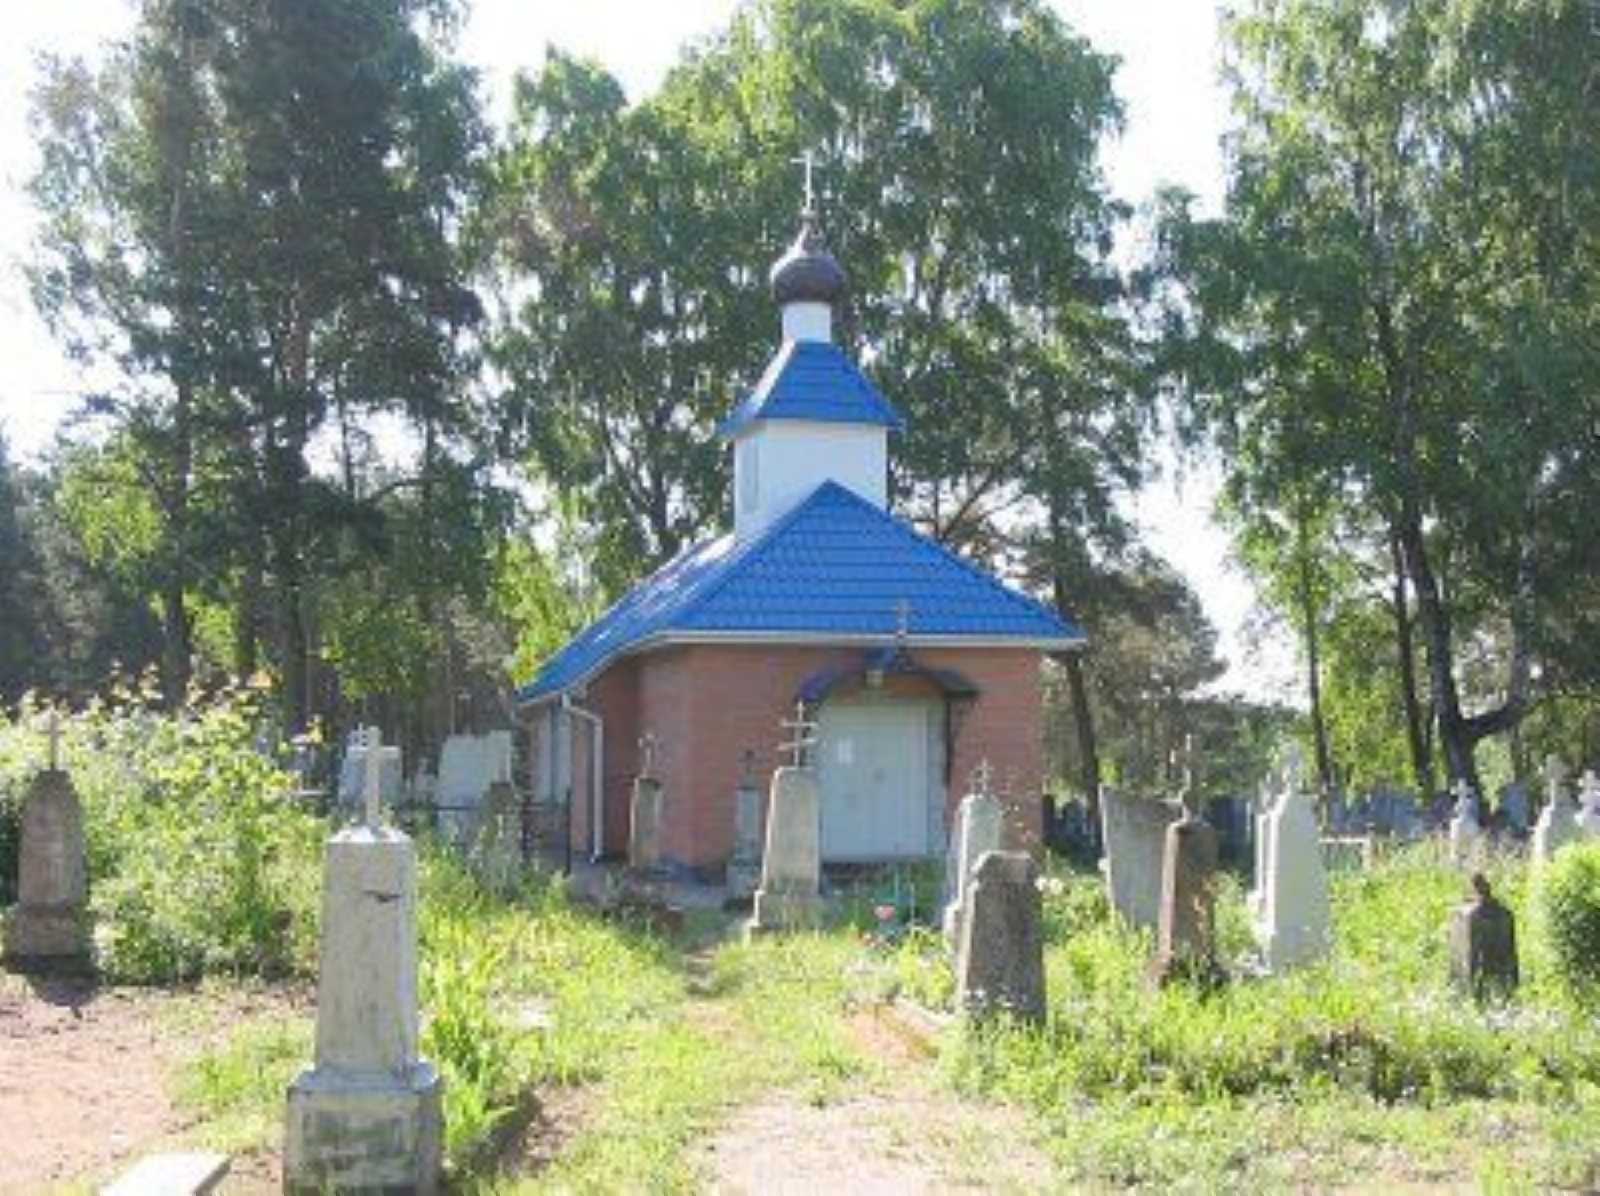 Церковь Св. Духа